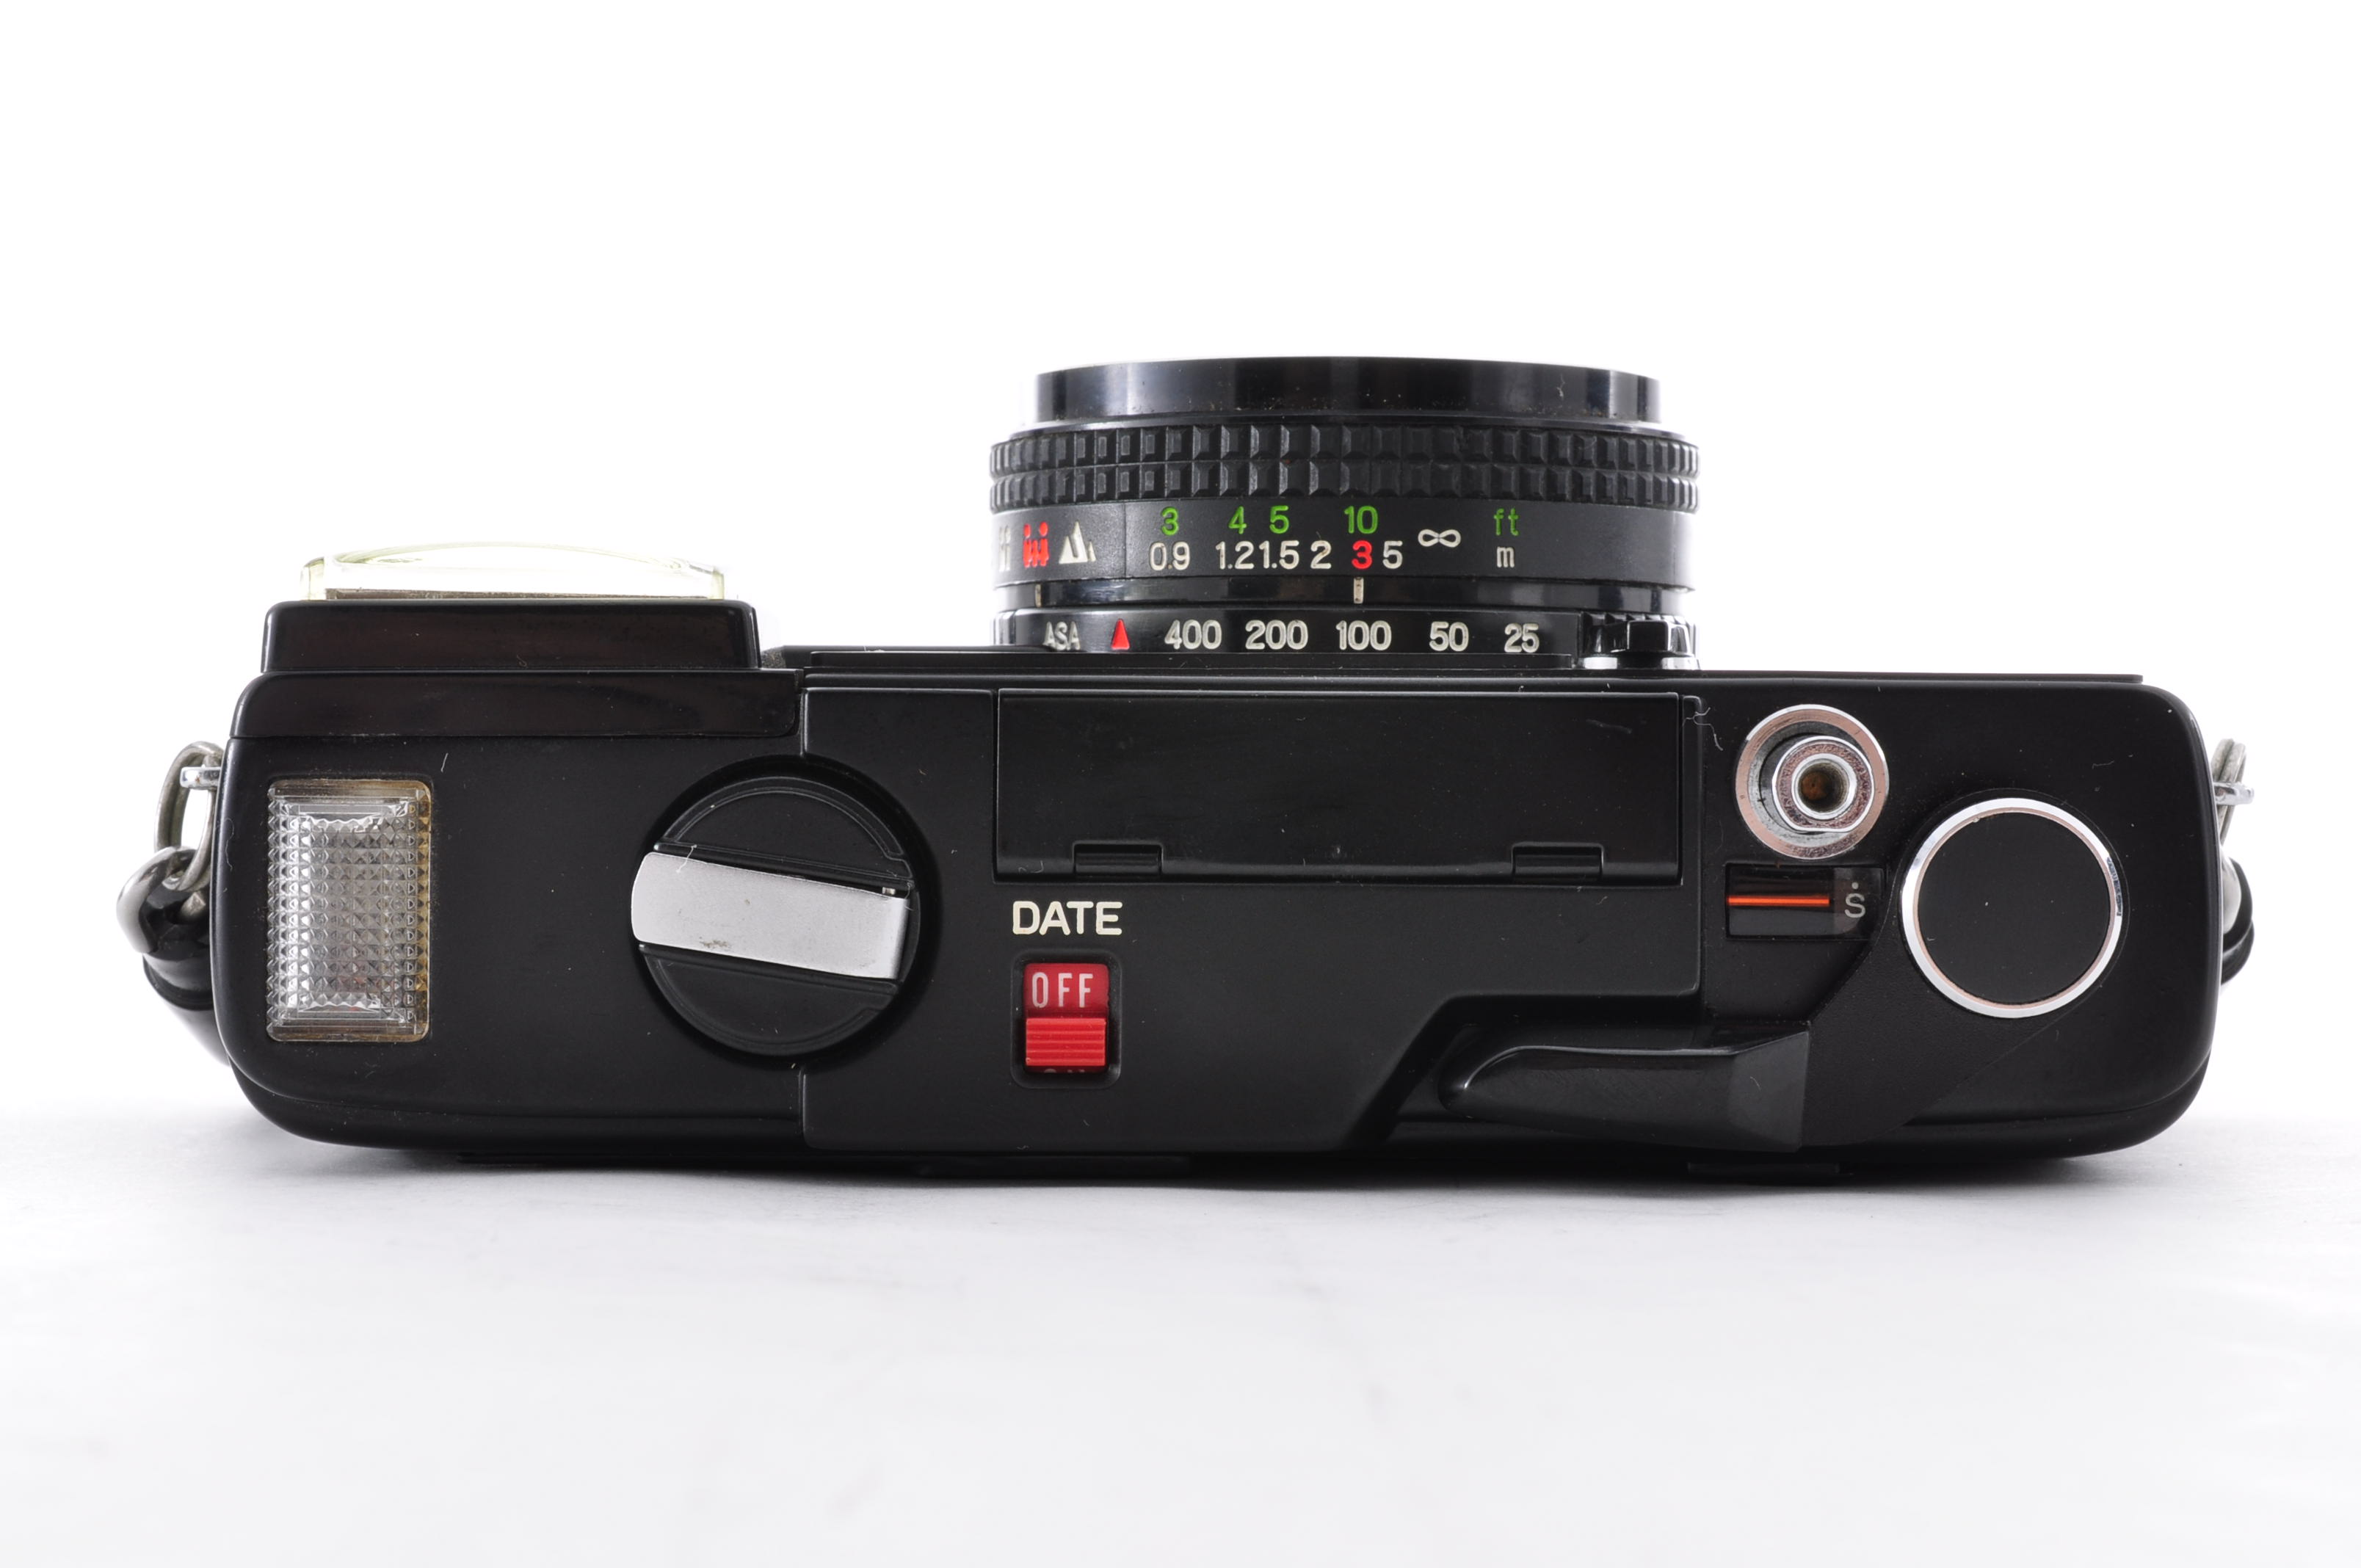 Fuji Fujifilm Flash Fujica Date Rangefinder 35mm Film Camera [Near MINT] JAPAN img09